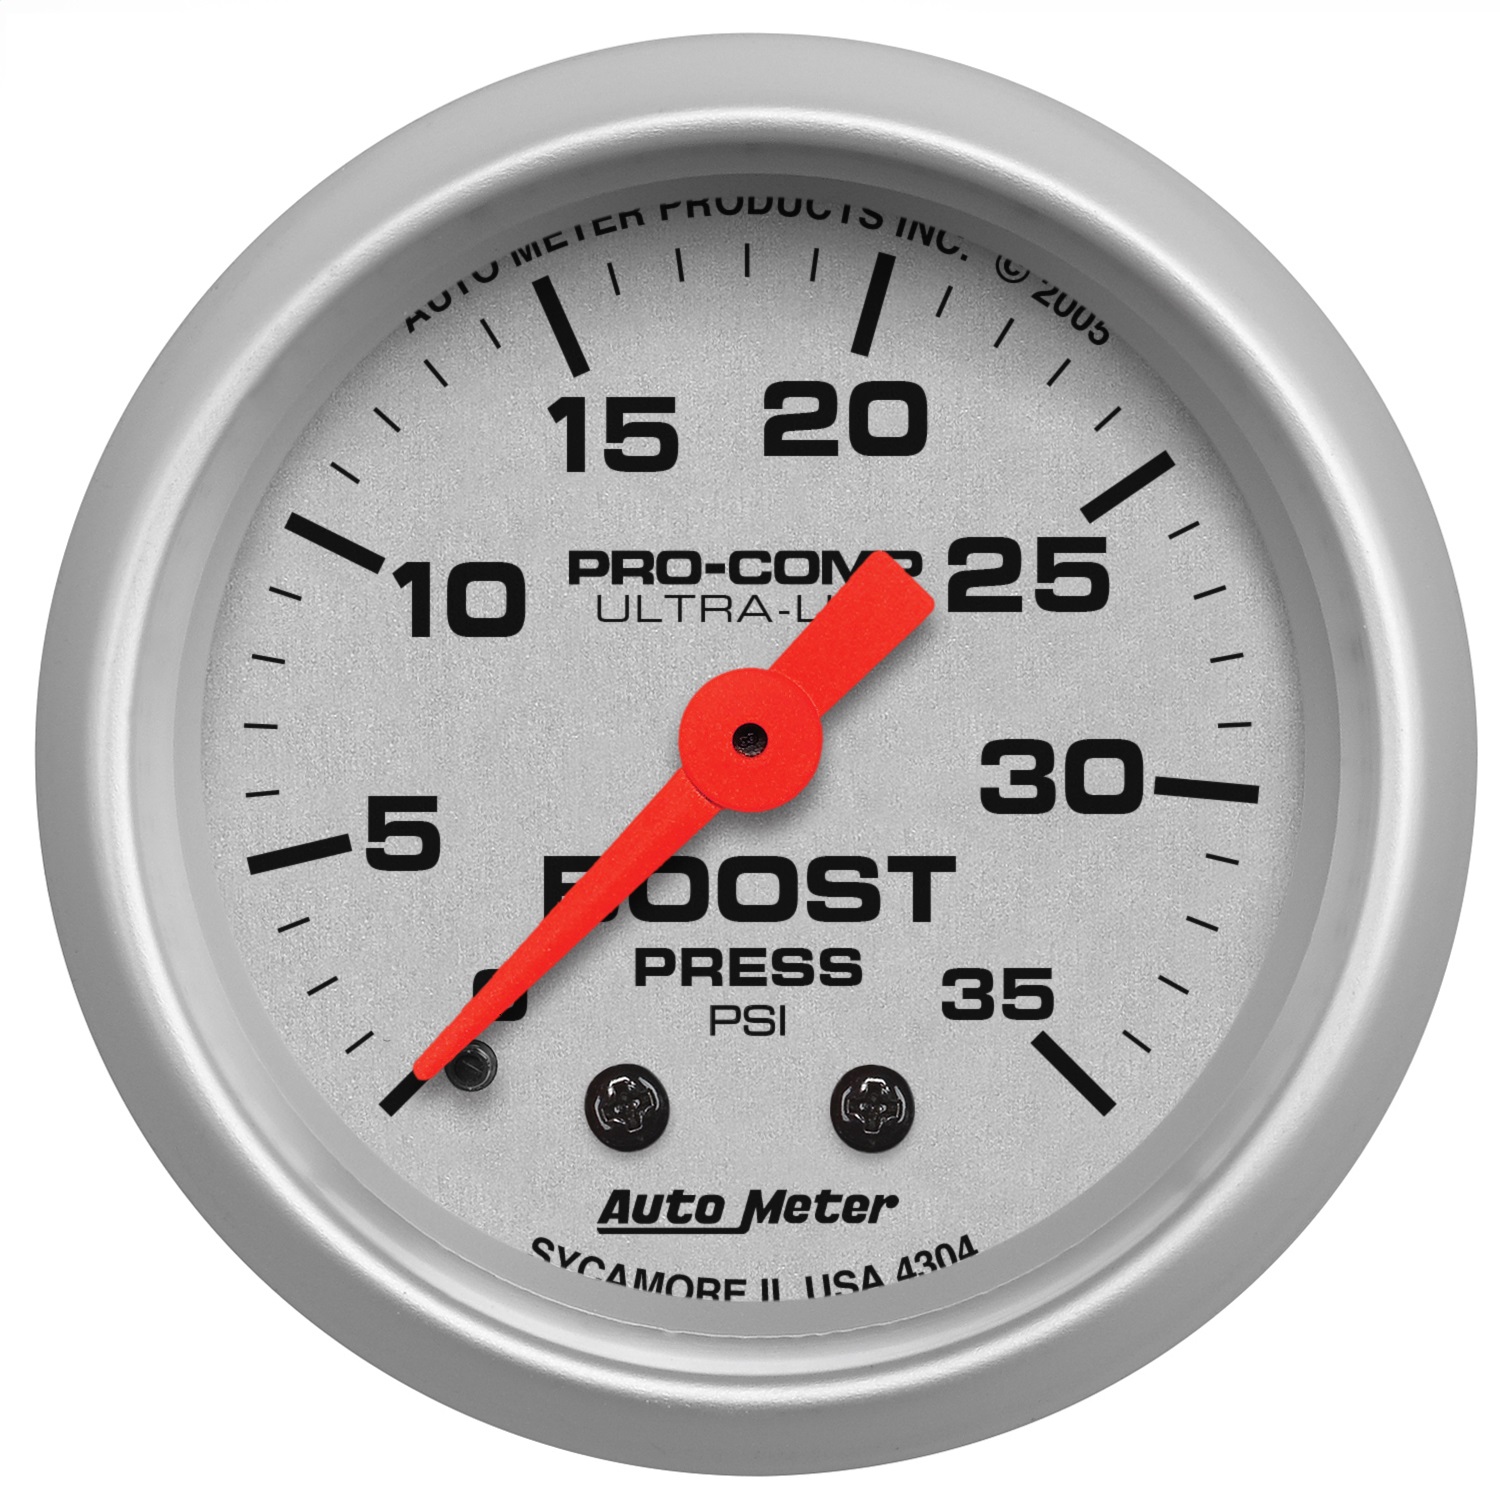 Auto Meter Auto Meter 4304 Ultra-Lite; Mechanical Boost Gauge